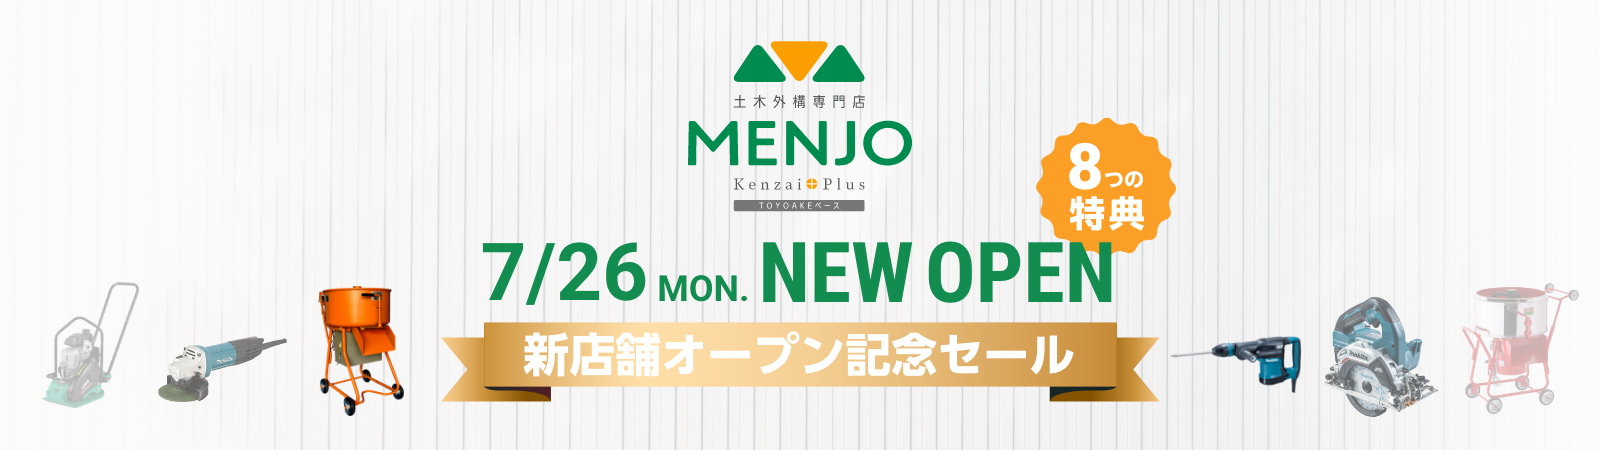 MENJO Kenzai+Plus 新店舗オープン